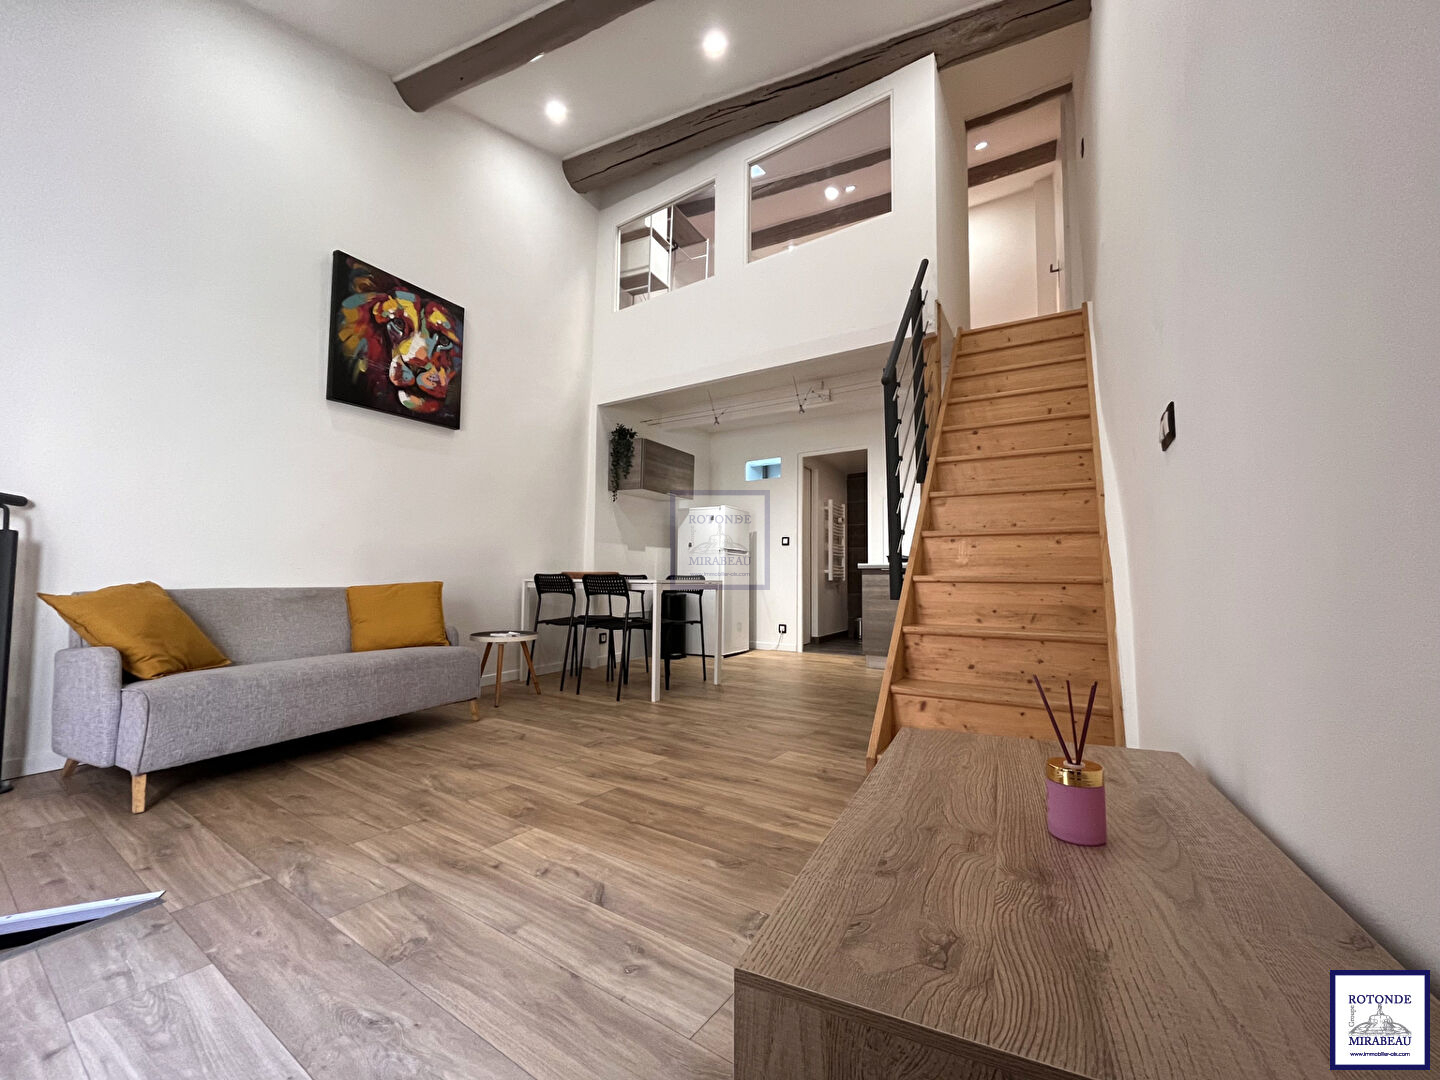 Vente Appartement AIX EN PROVENCE surface habitable de 37.95 m²